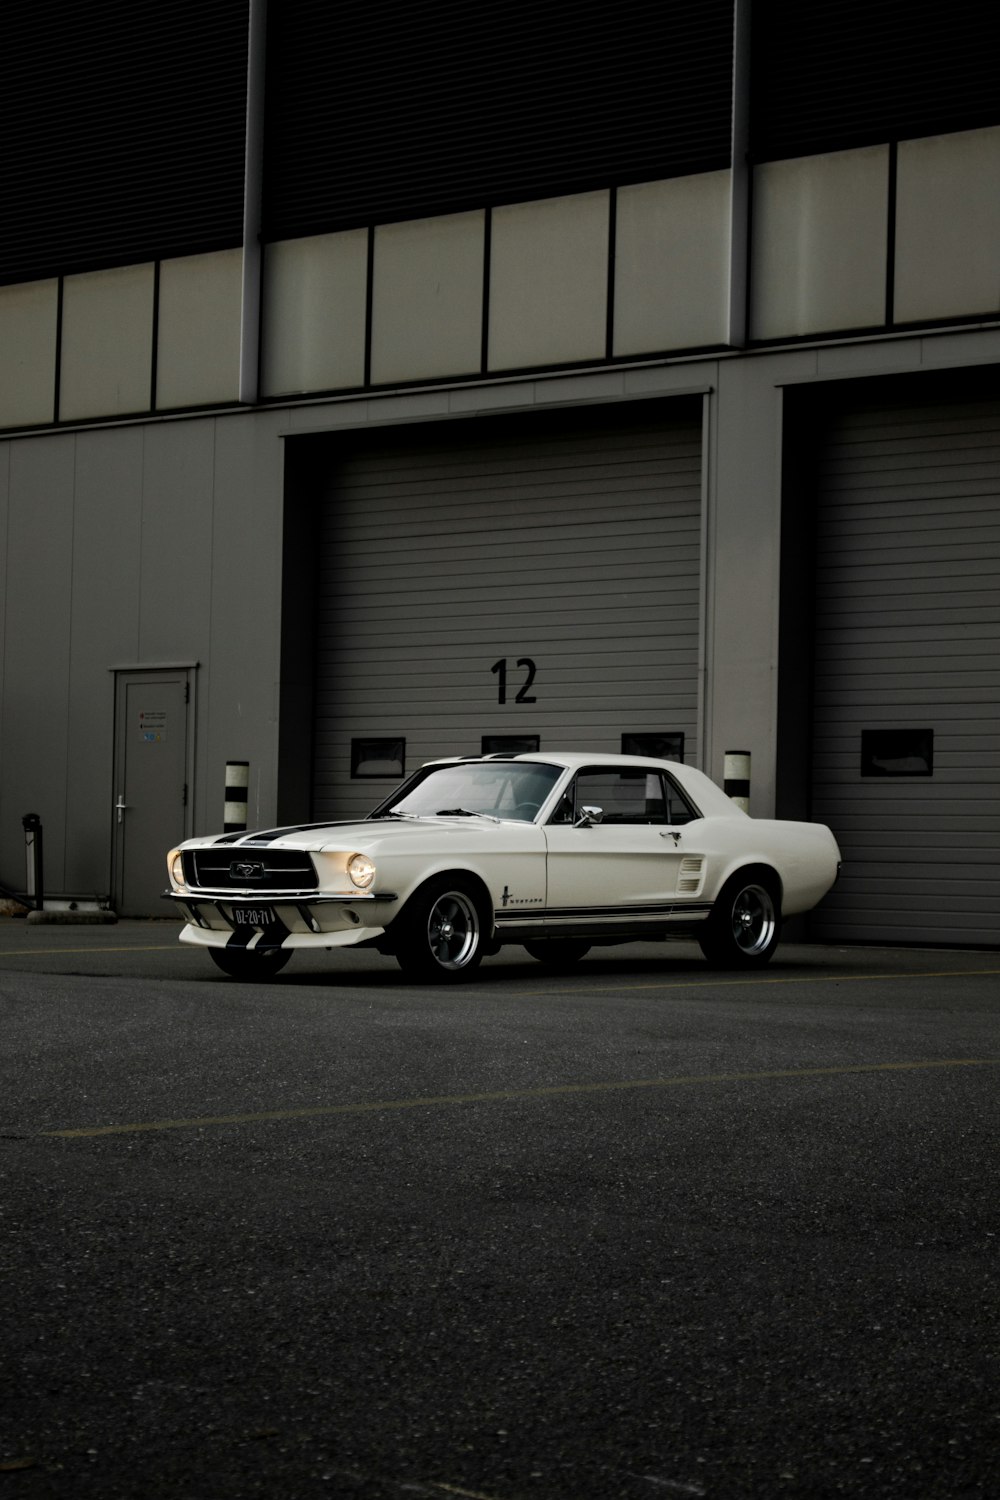 Weißer Chevrolet Camaro vor der Garage geparkt